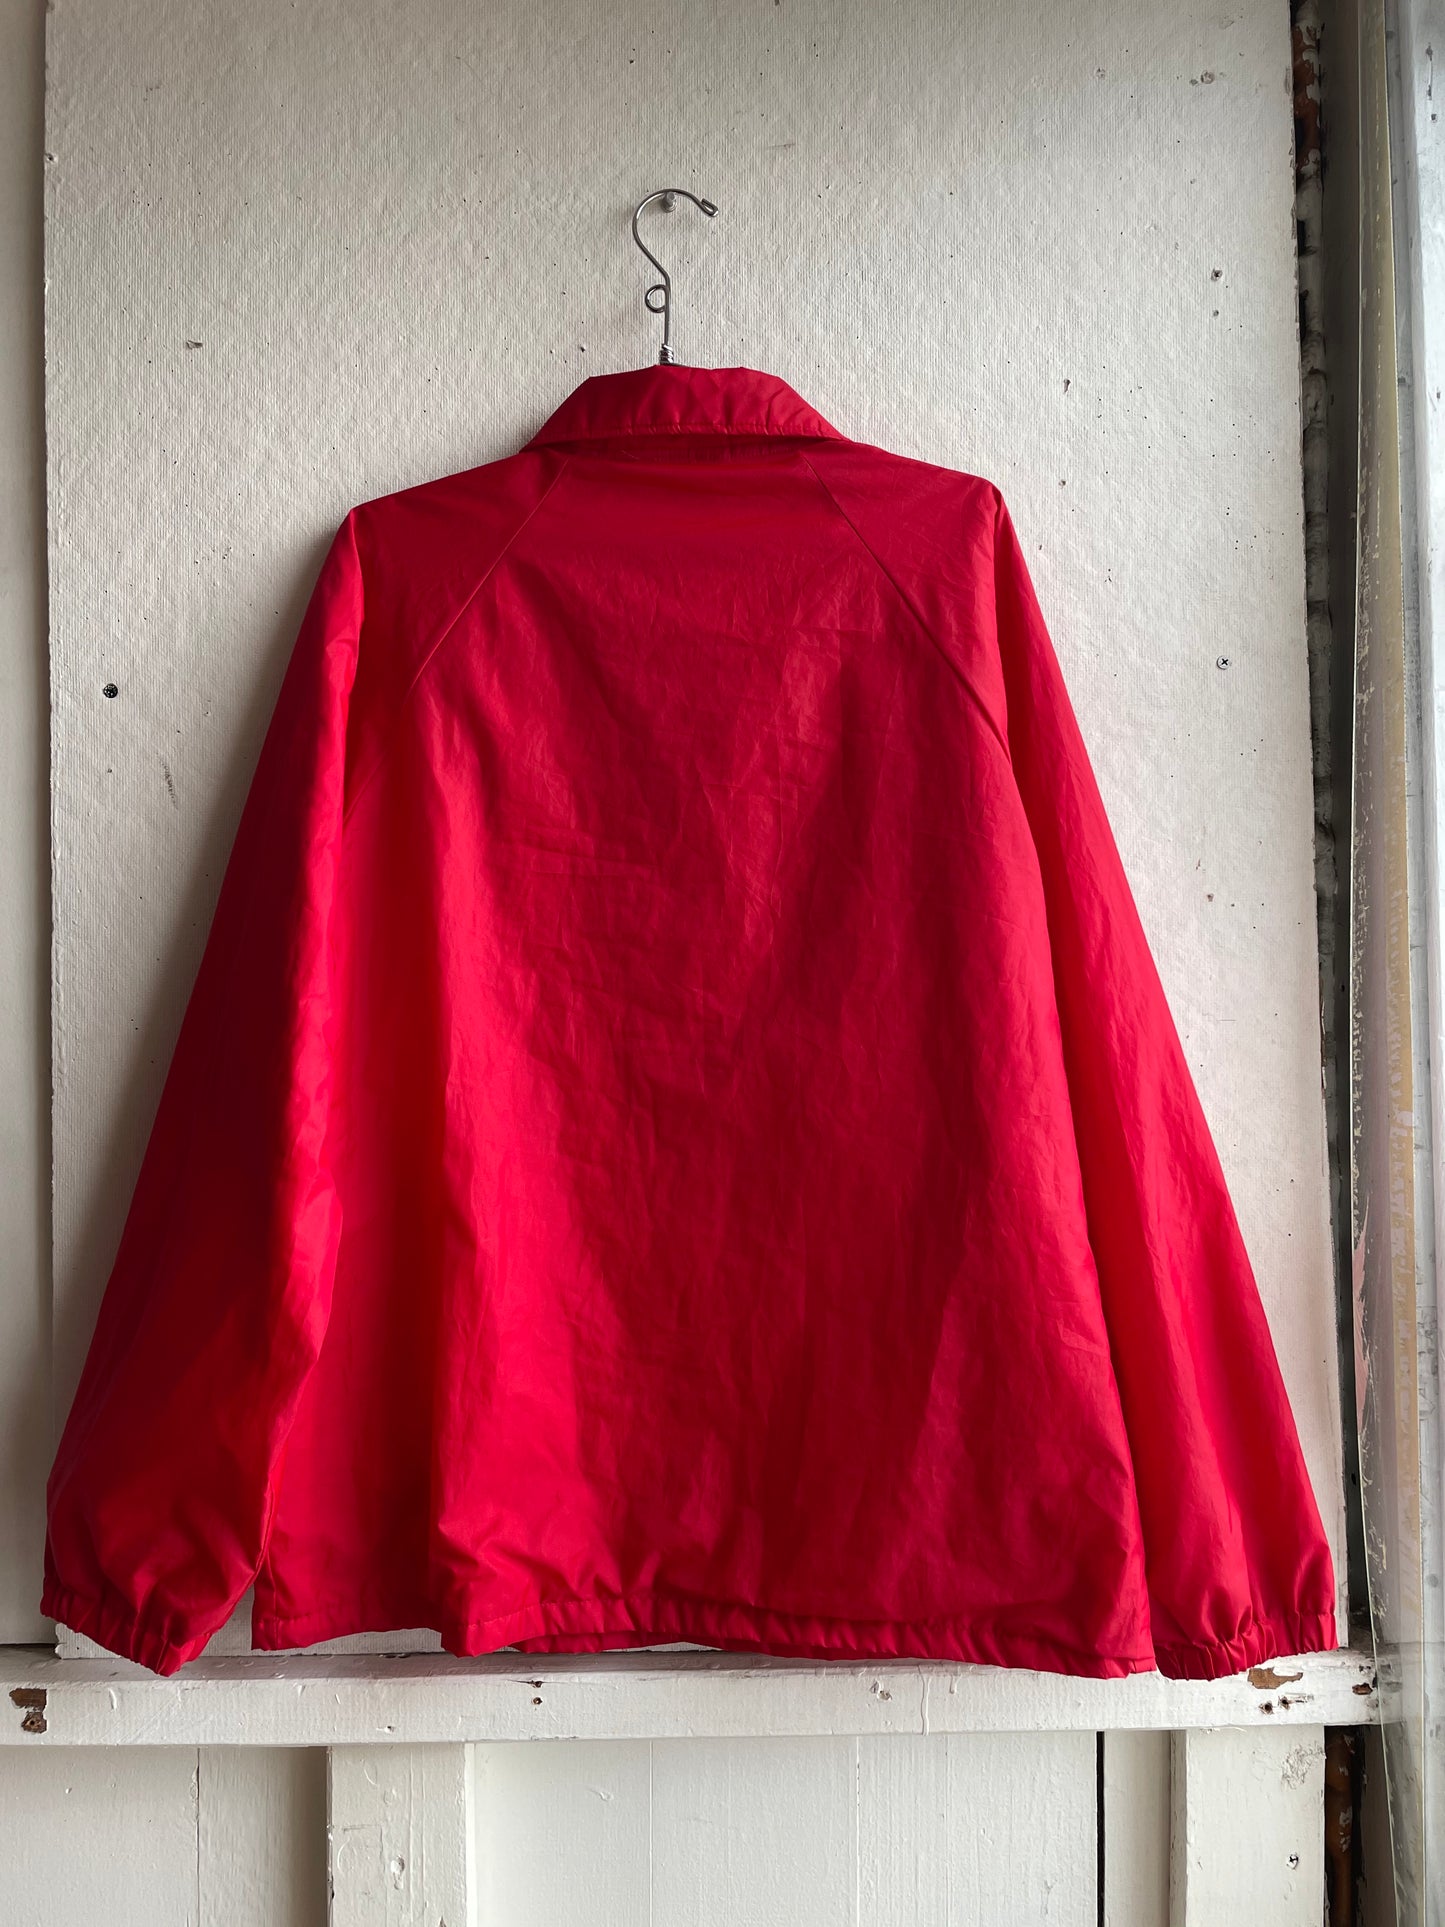 Vintage Red Safety Jacket